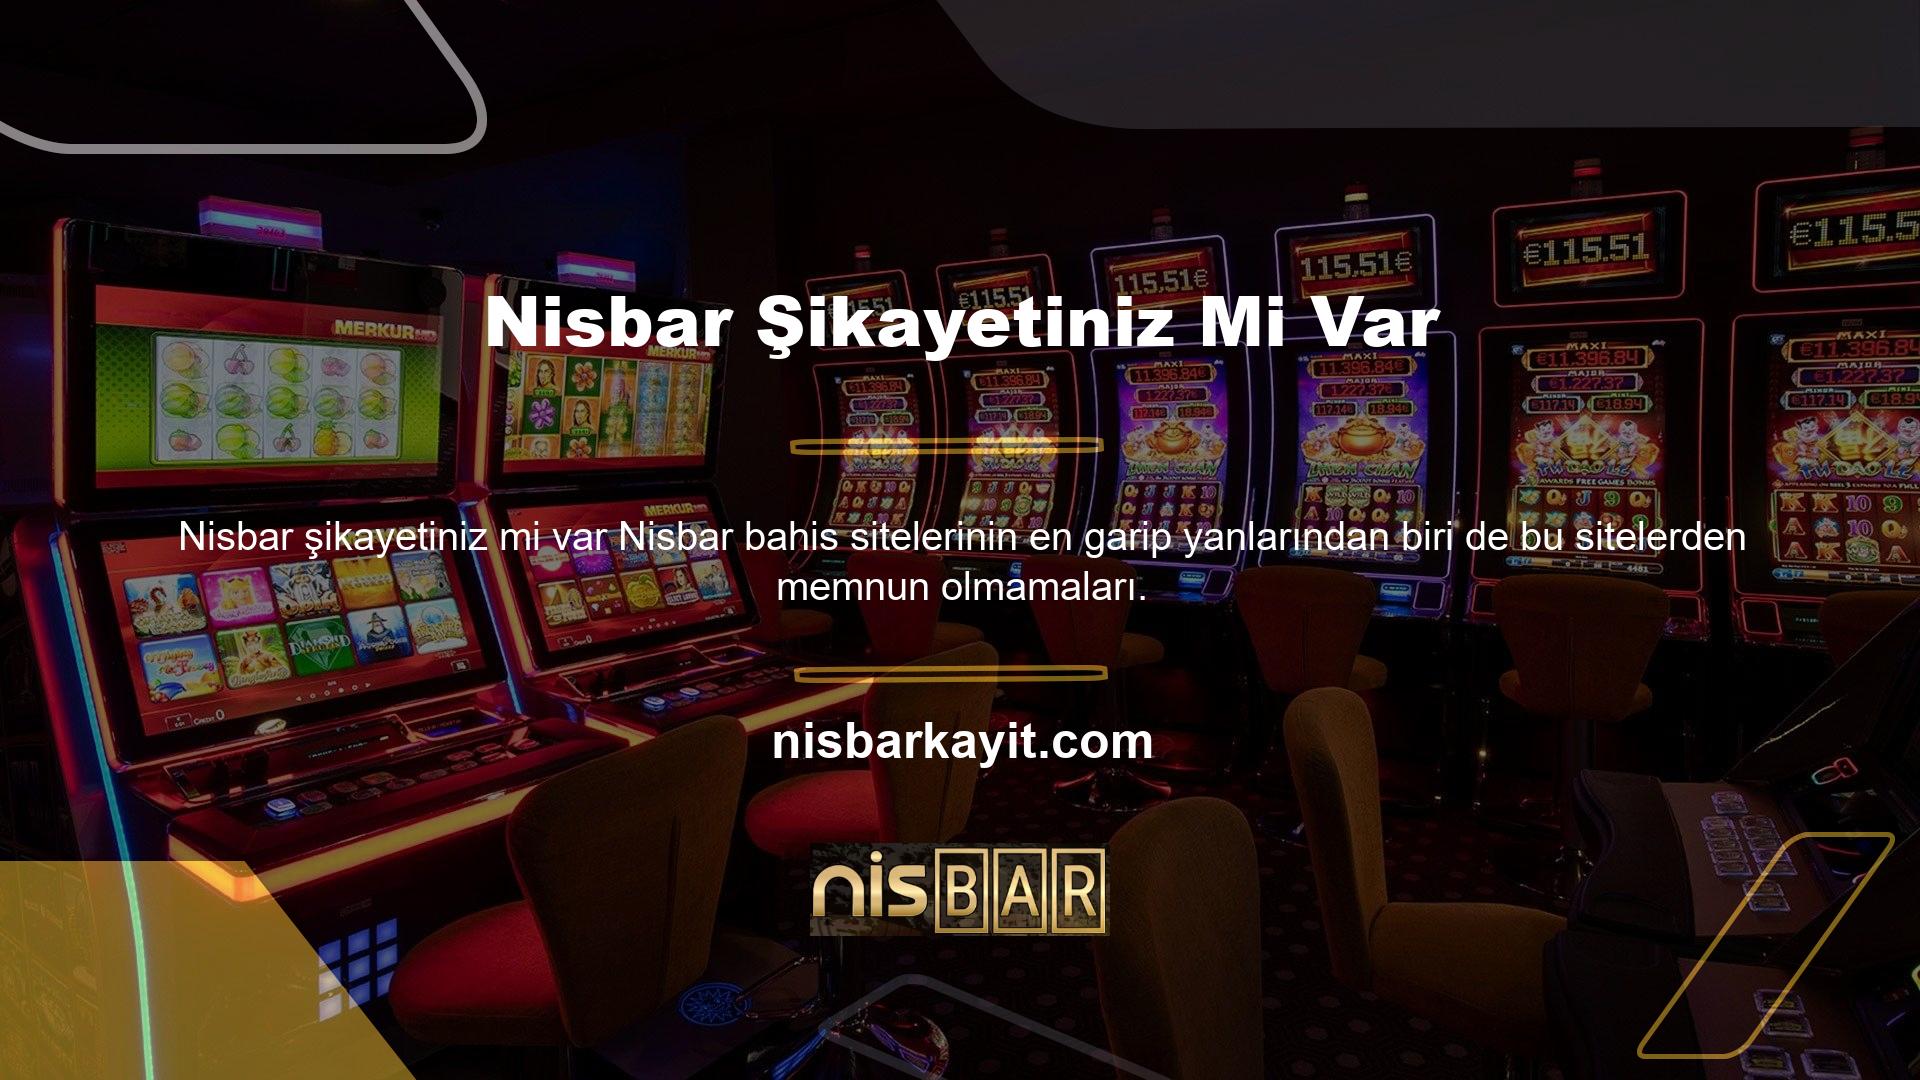 Nisbar bahis sitesi bölümü daha geniş bir program yelpazesine sahiptir